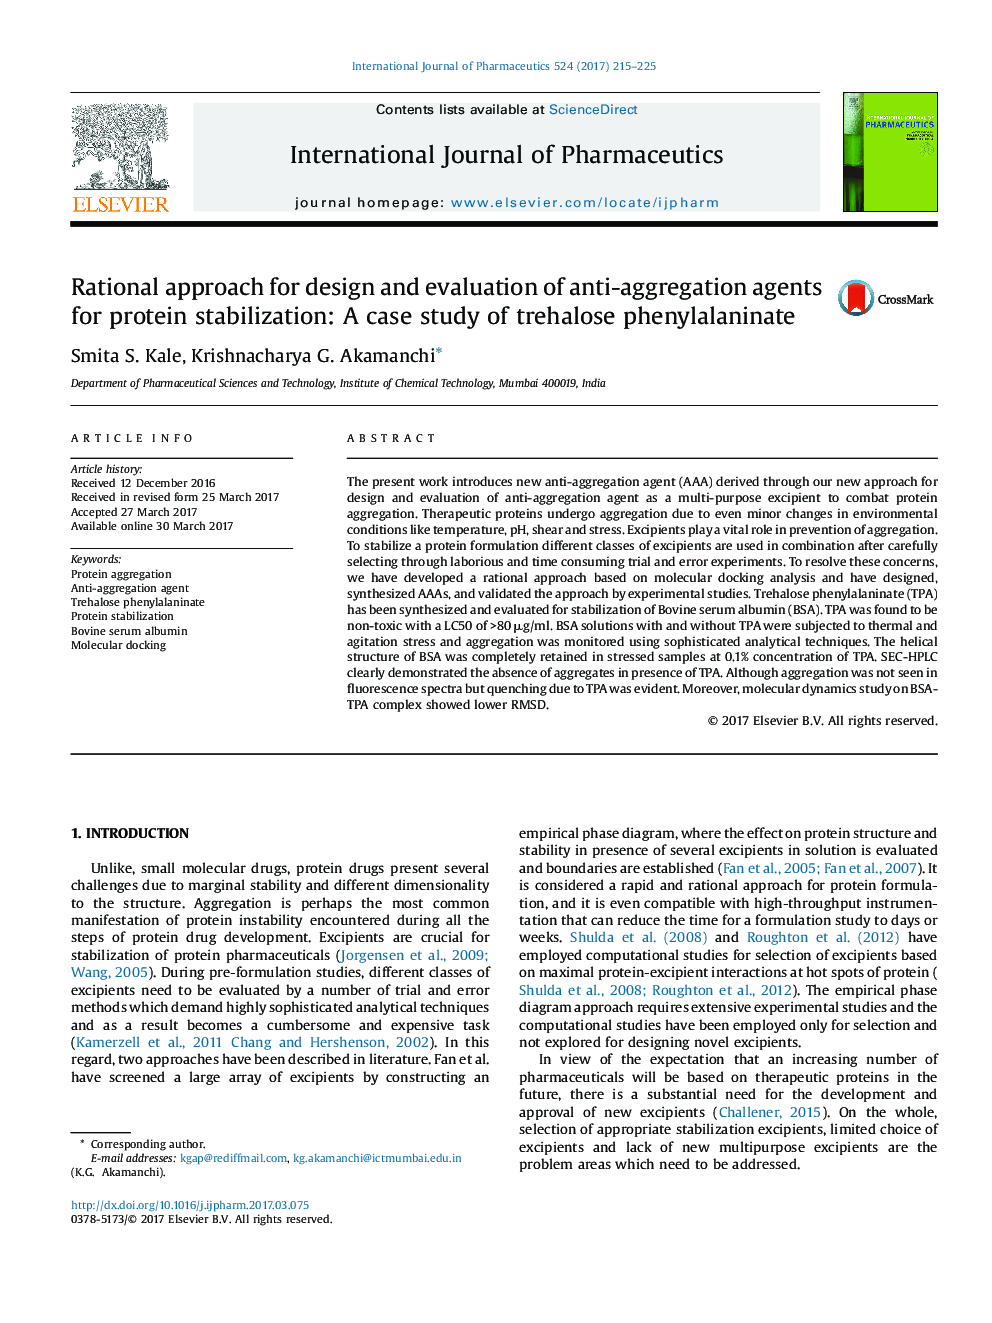 رویکرد منطقی برای طراحی و ارزیابی عوامل ضد تجمع برای تثبیت پروتئین: مطالعه موردی فنیل آلانینات تر هالوز 